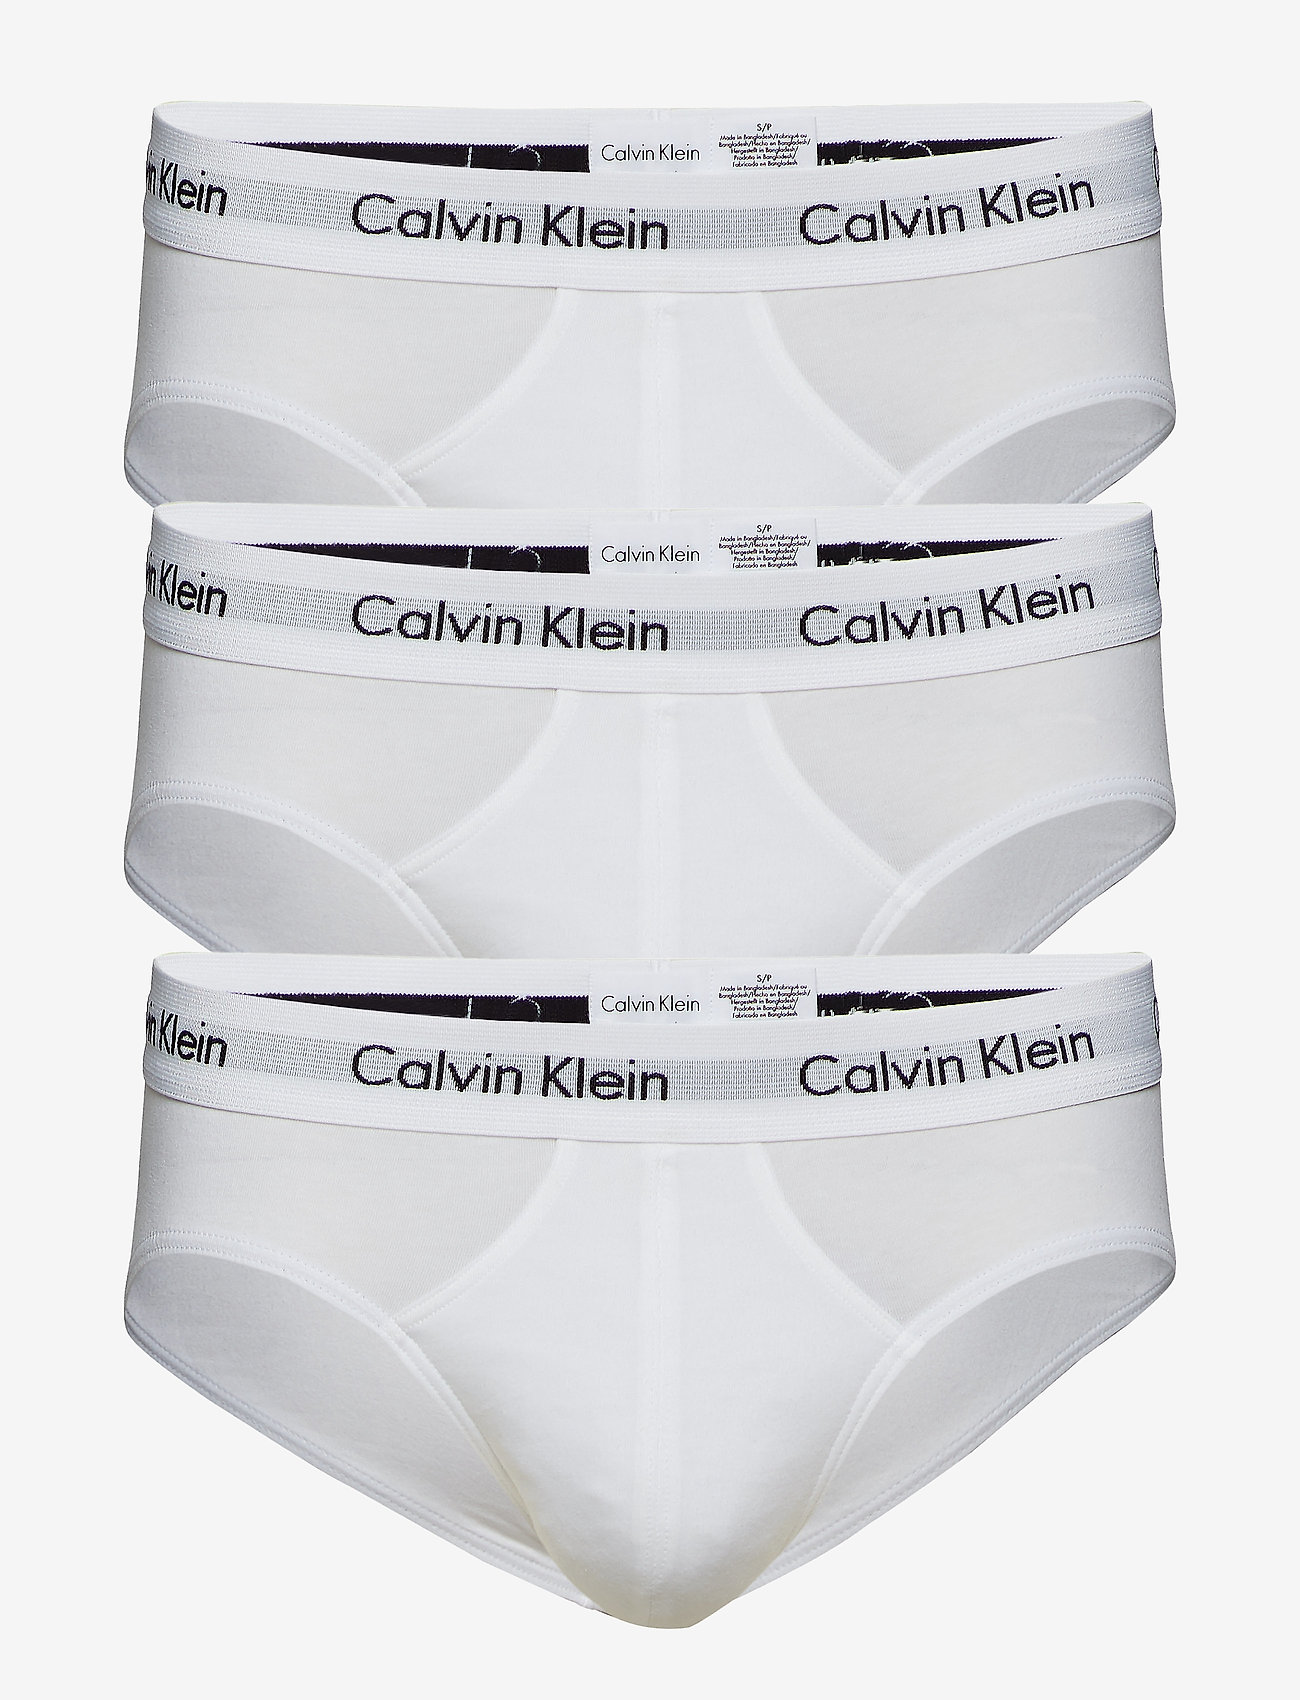 100 cotton underwear calvin klein